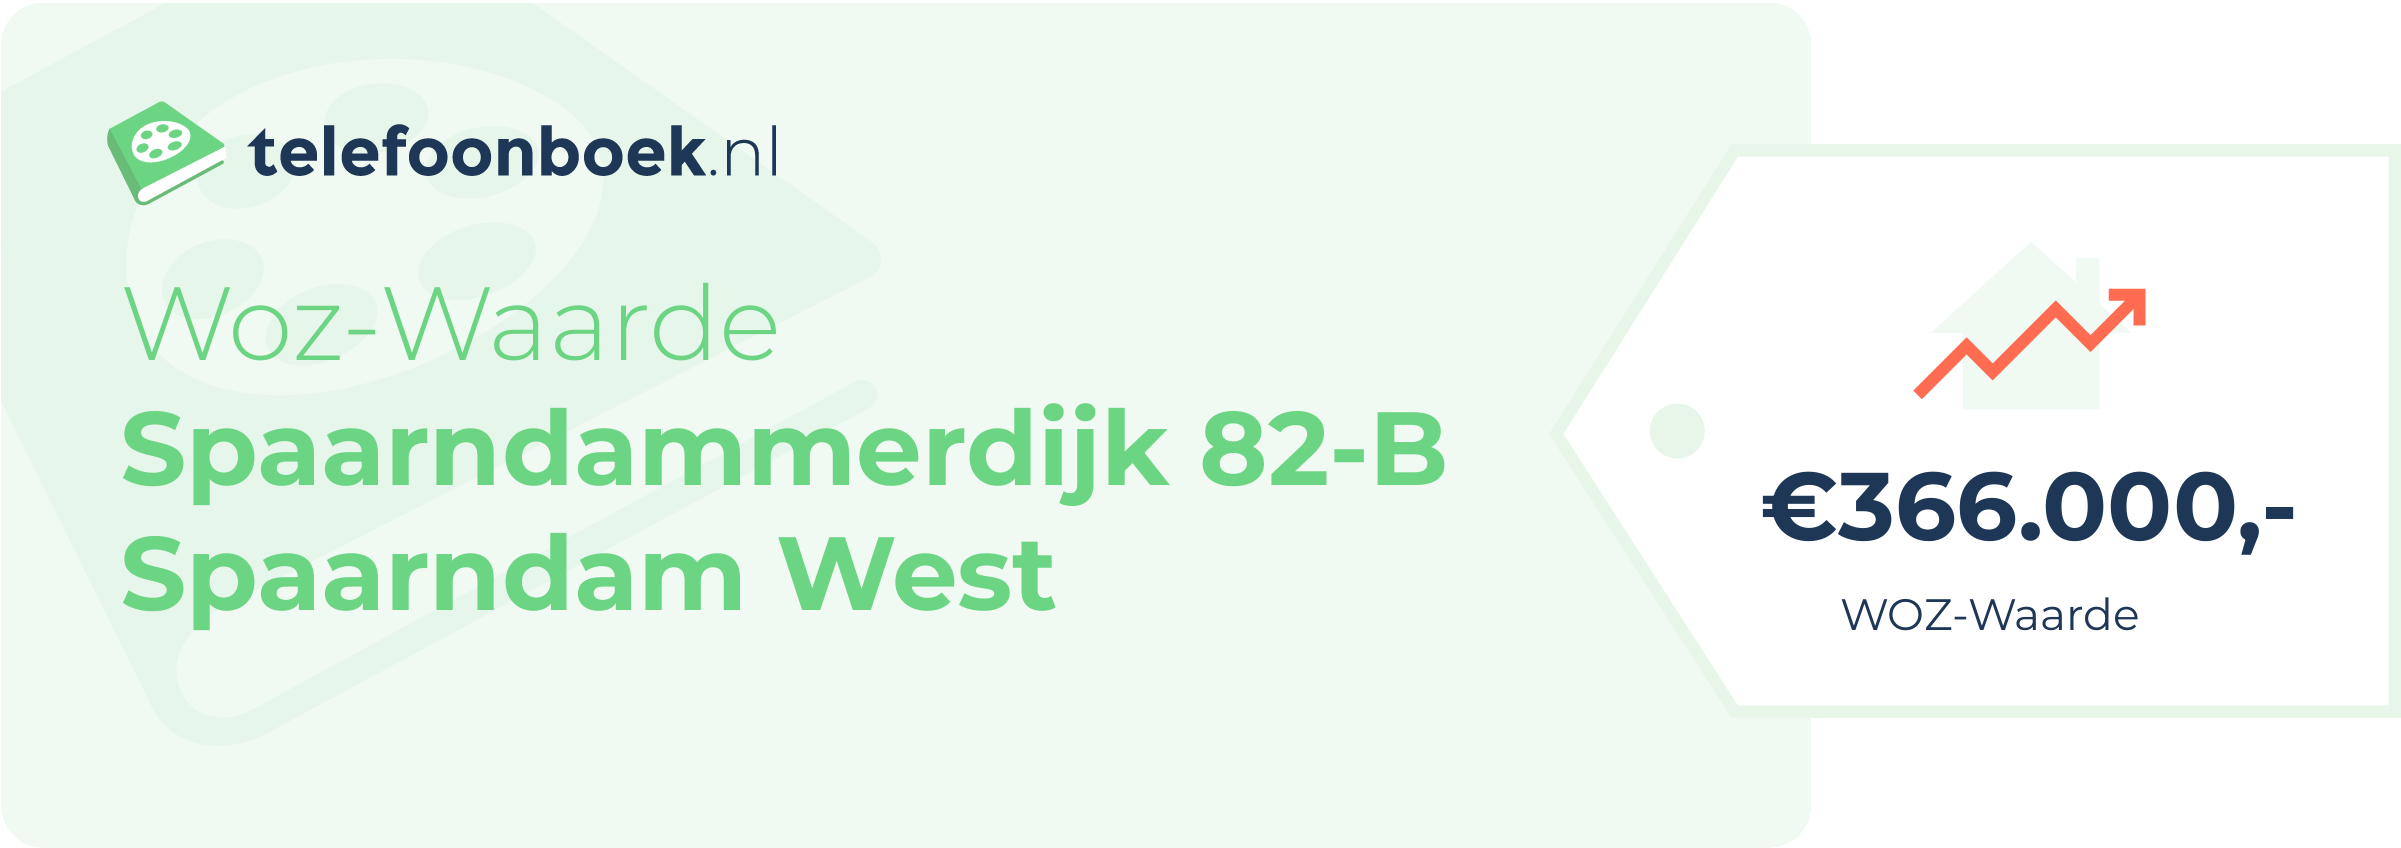 WOZ-waarde Spaarndammerdijk 82-B Spaarndam West